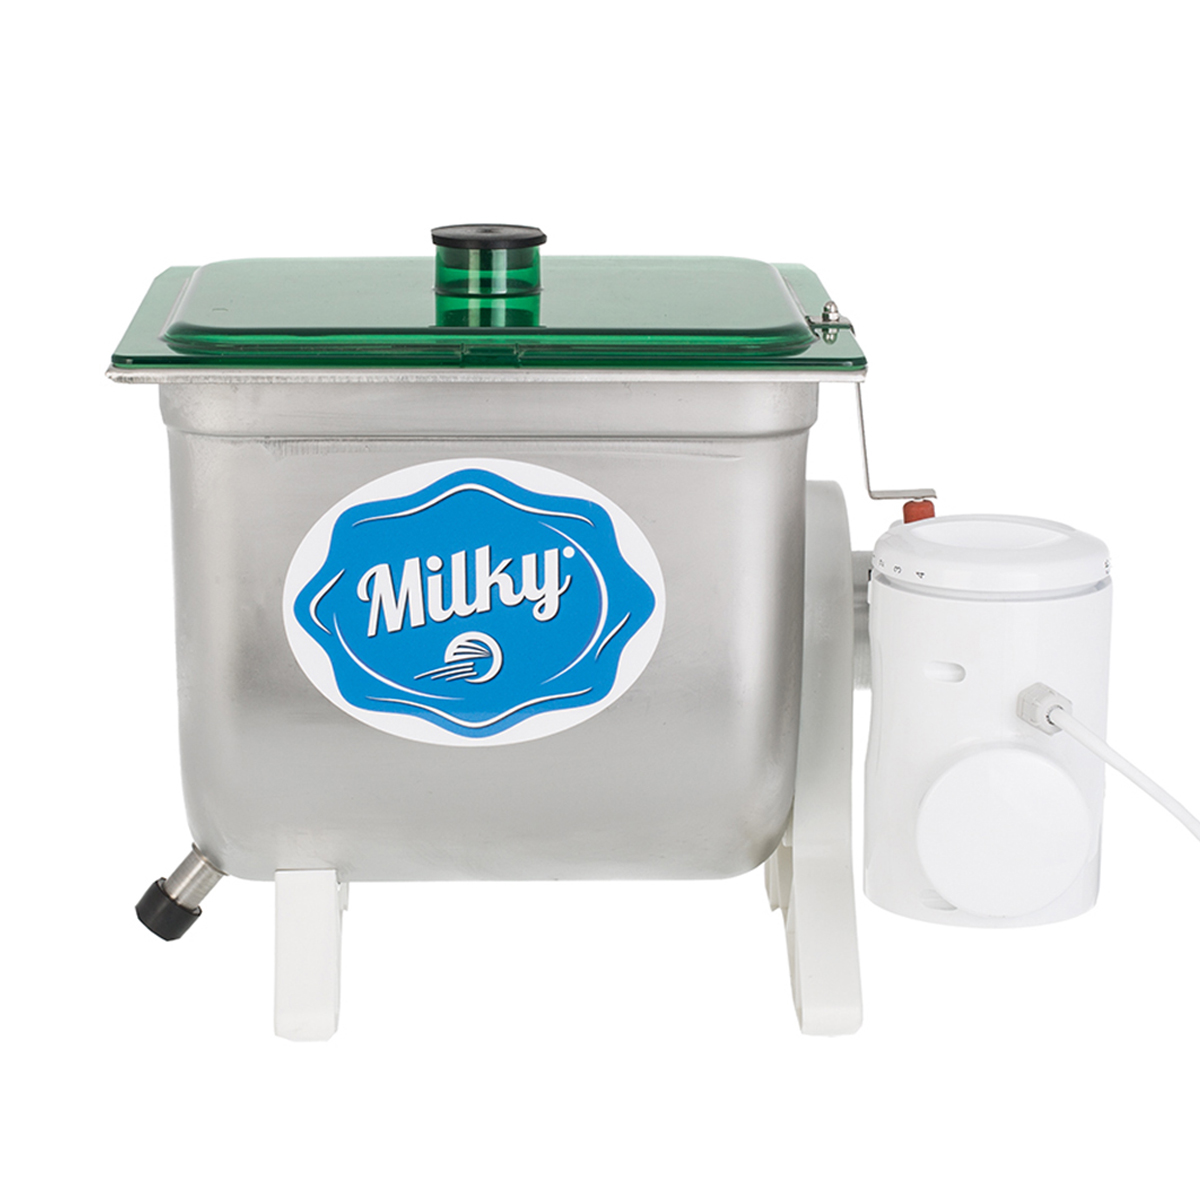 Machine à beurre laitier Milky FJ 10, 230V